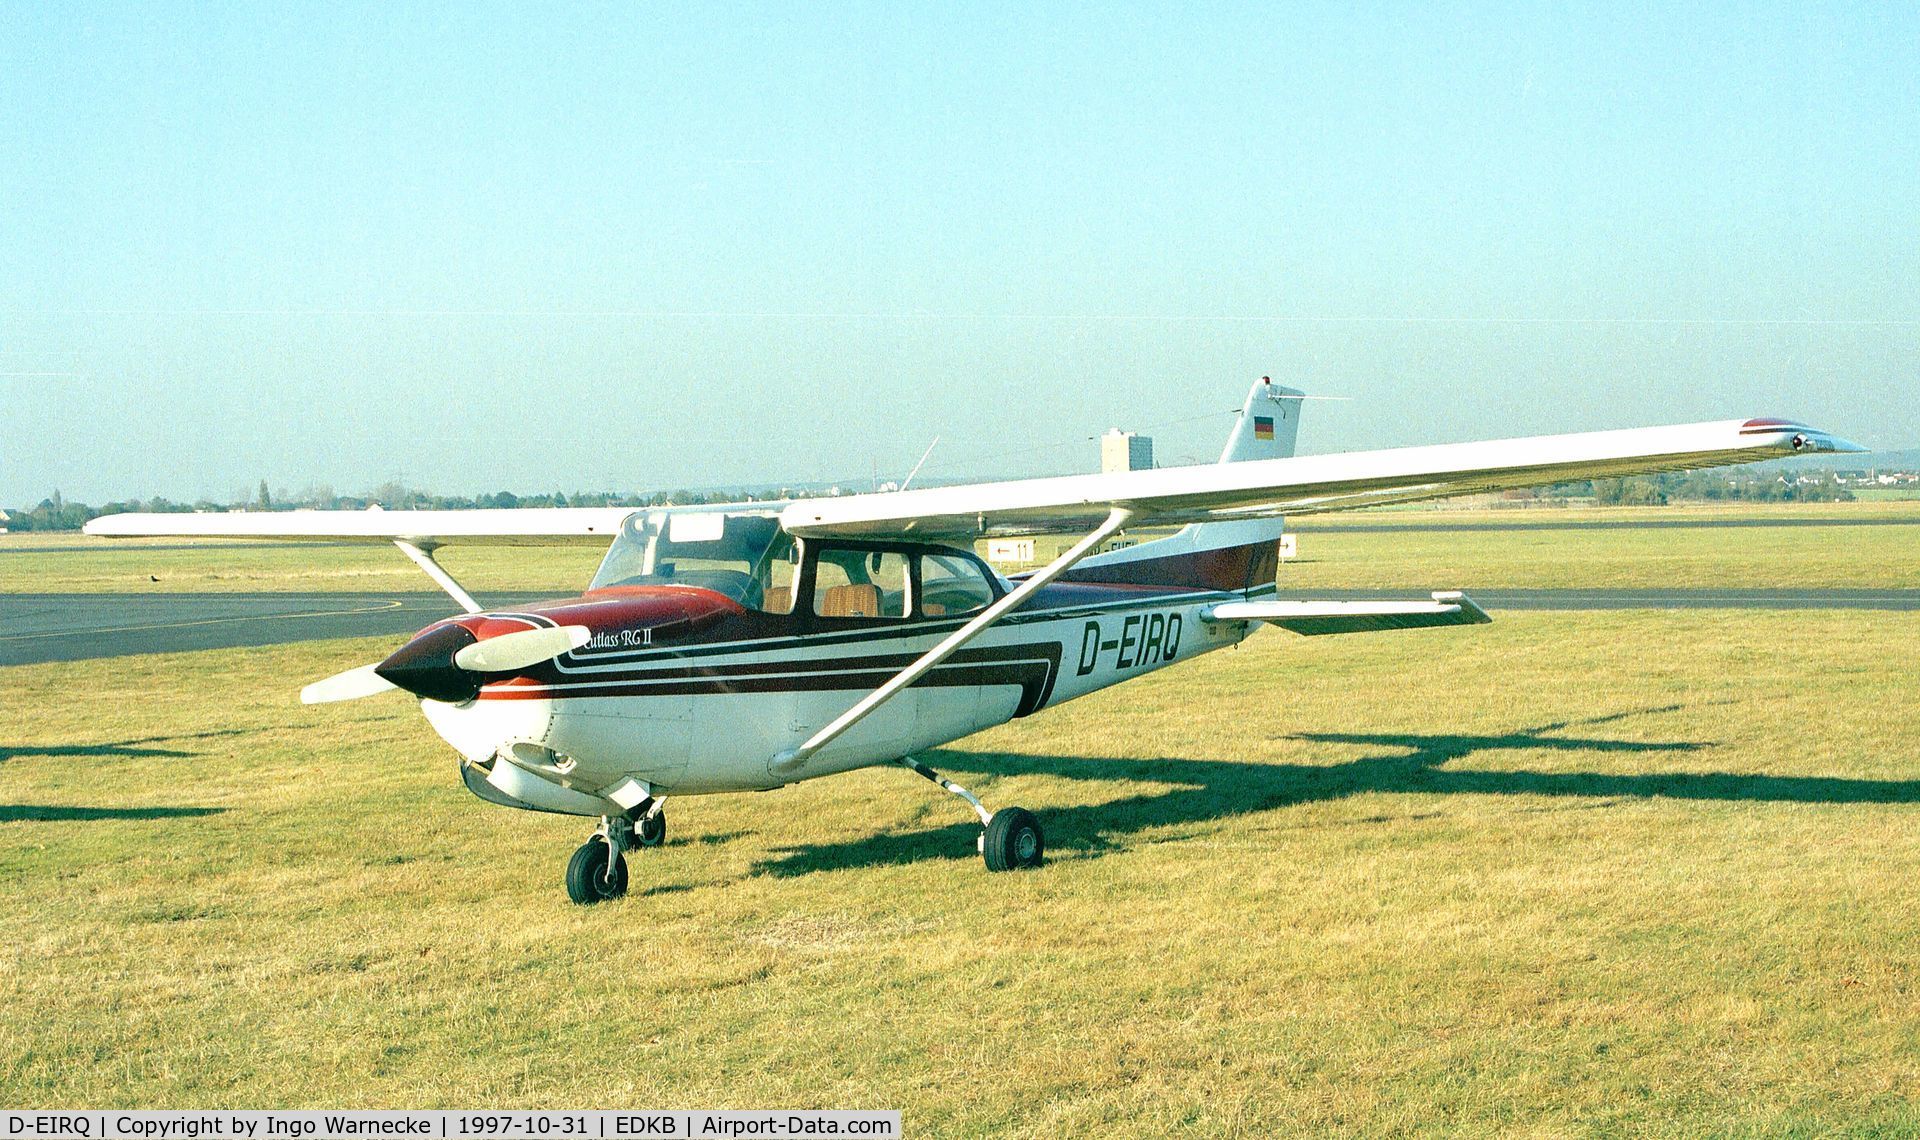 D-EIRQ, Cessna 172RG Cutlass RG C/N 172RG0813, Cessna 172RG Cutlass RG II at Bonn-Hangelar airfield